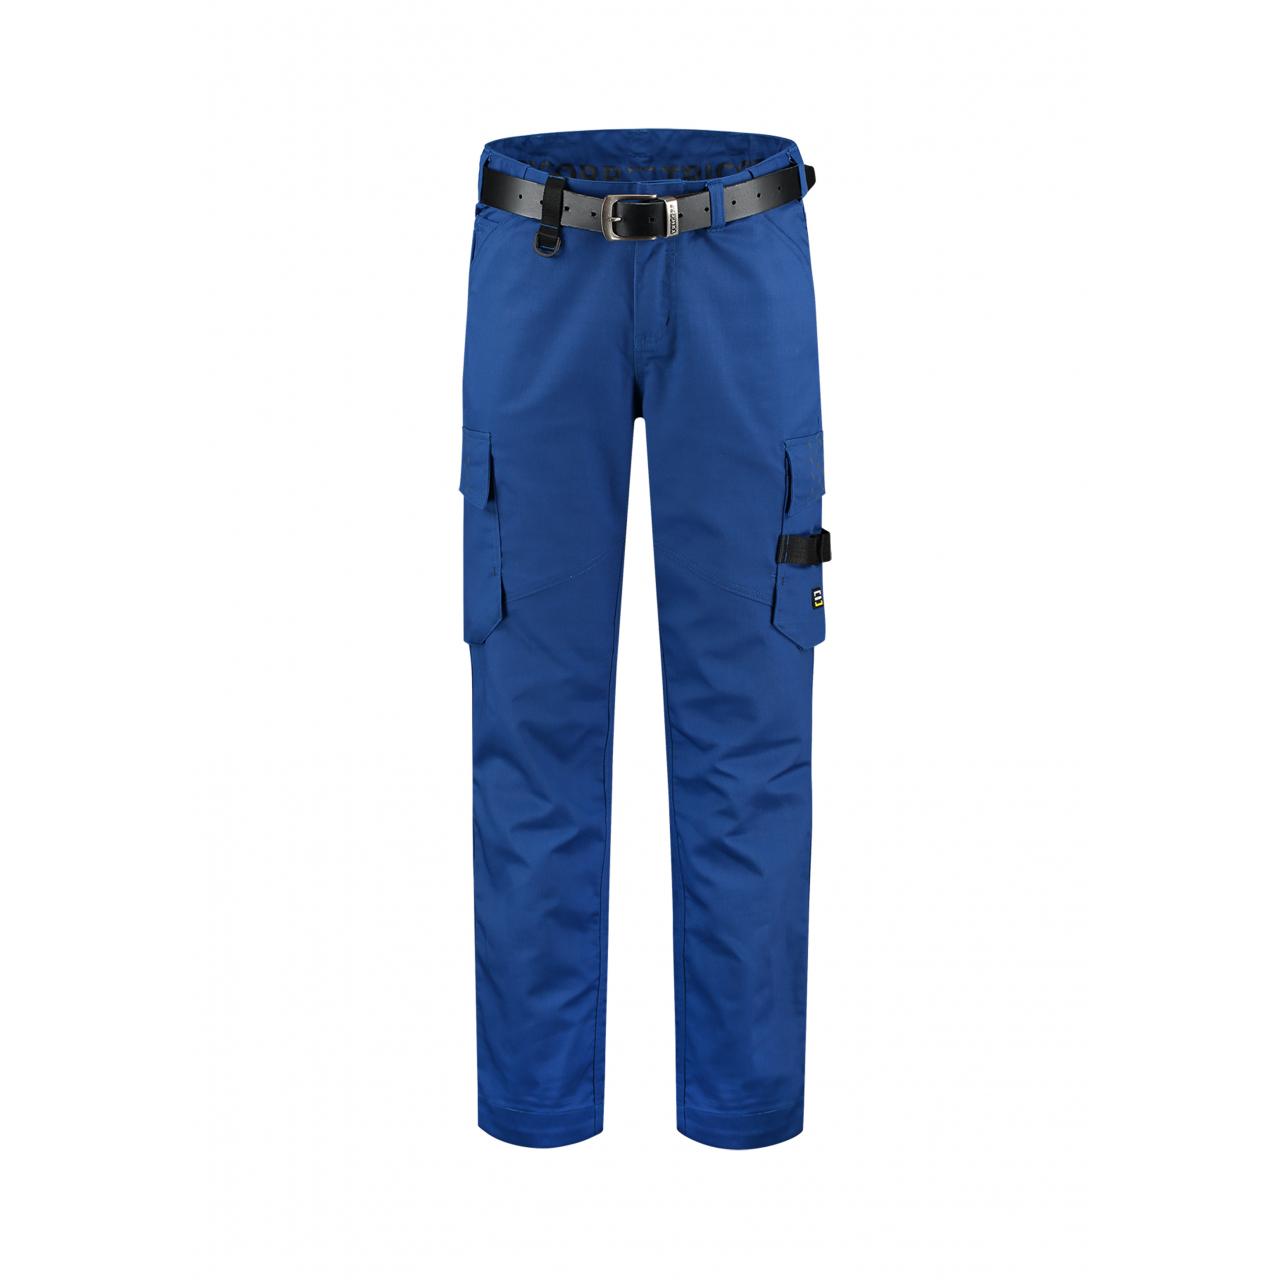 Pracovní kalhoty unisex Tricorp Work Pants Twill - modré, 46